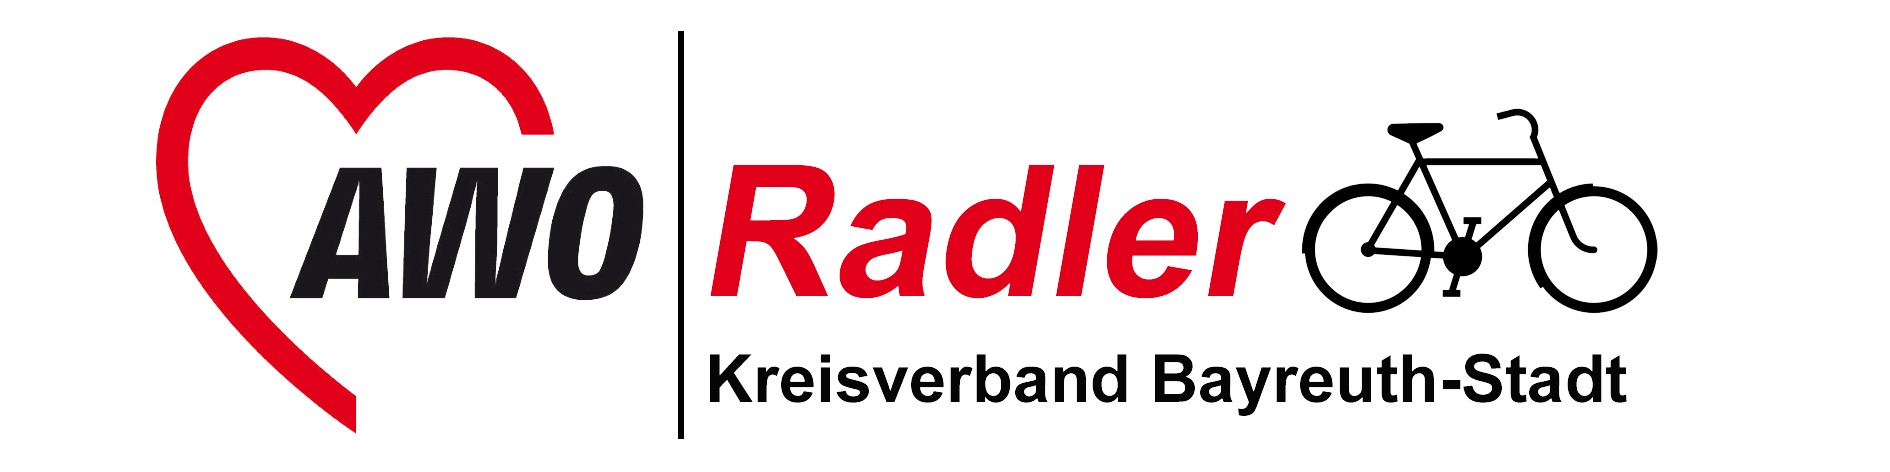 Jetzt anmelden: AWO Radler nehmen am Stadtradeln in Bayreuth teil